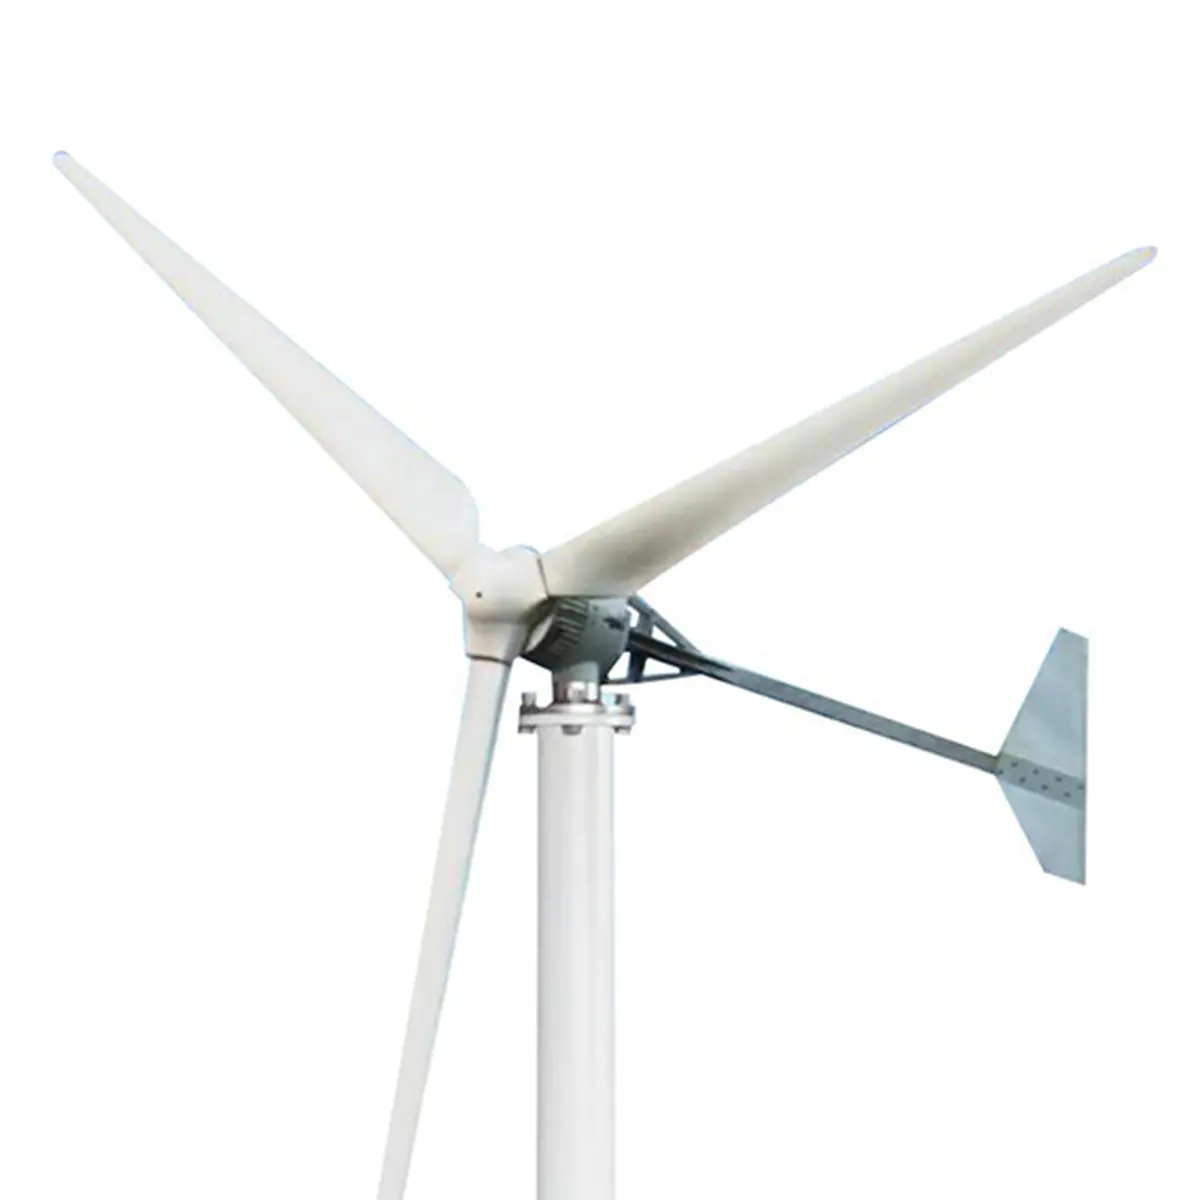 Turbine éolienne hors réseau 5kw éolienne 5kw système de production d'énergie éolienne